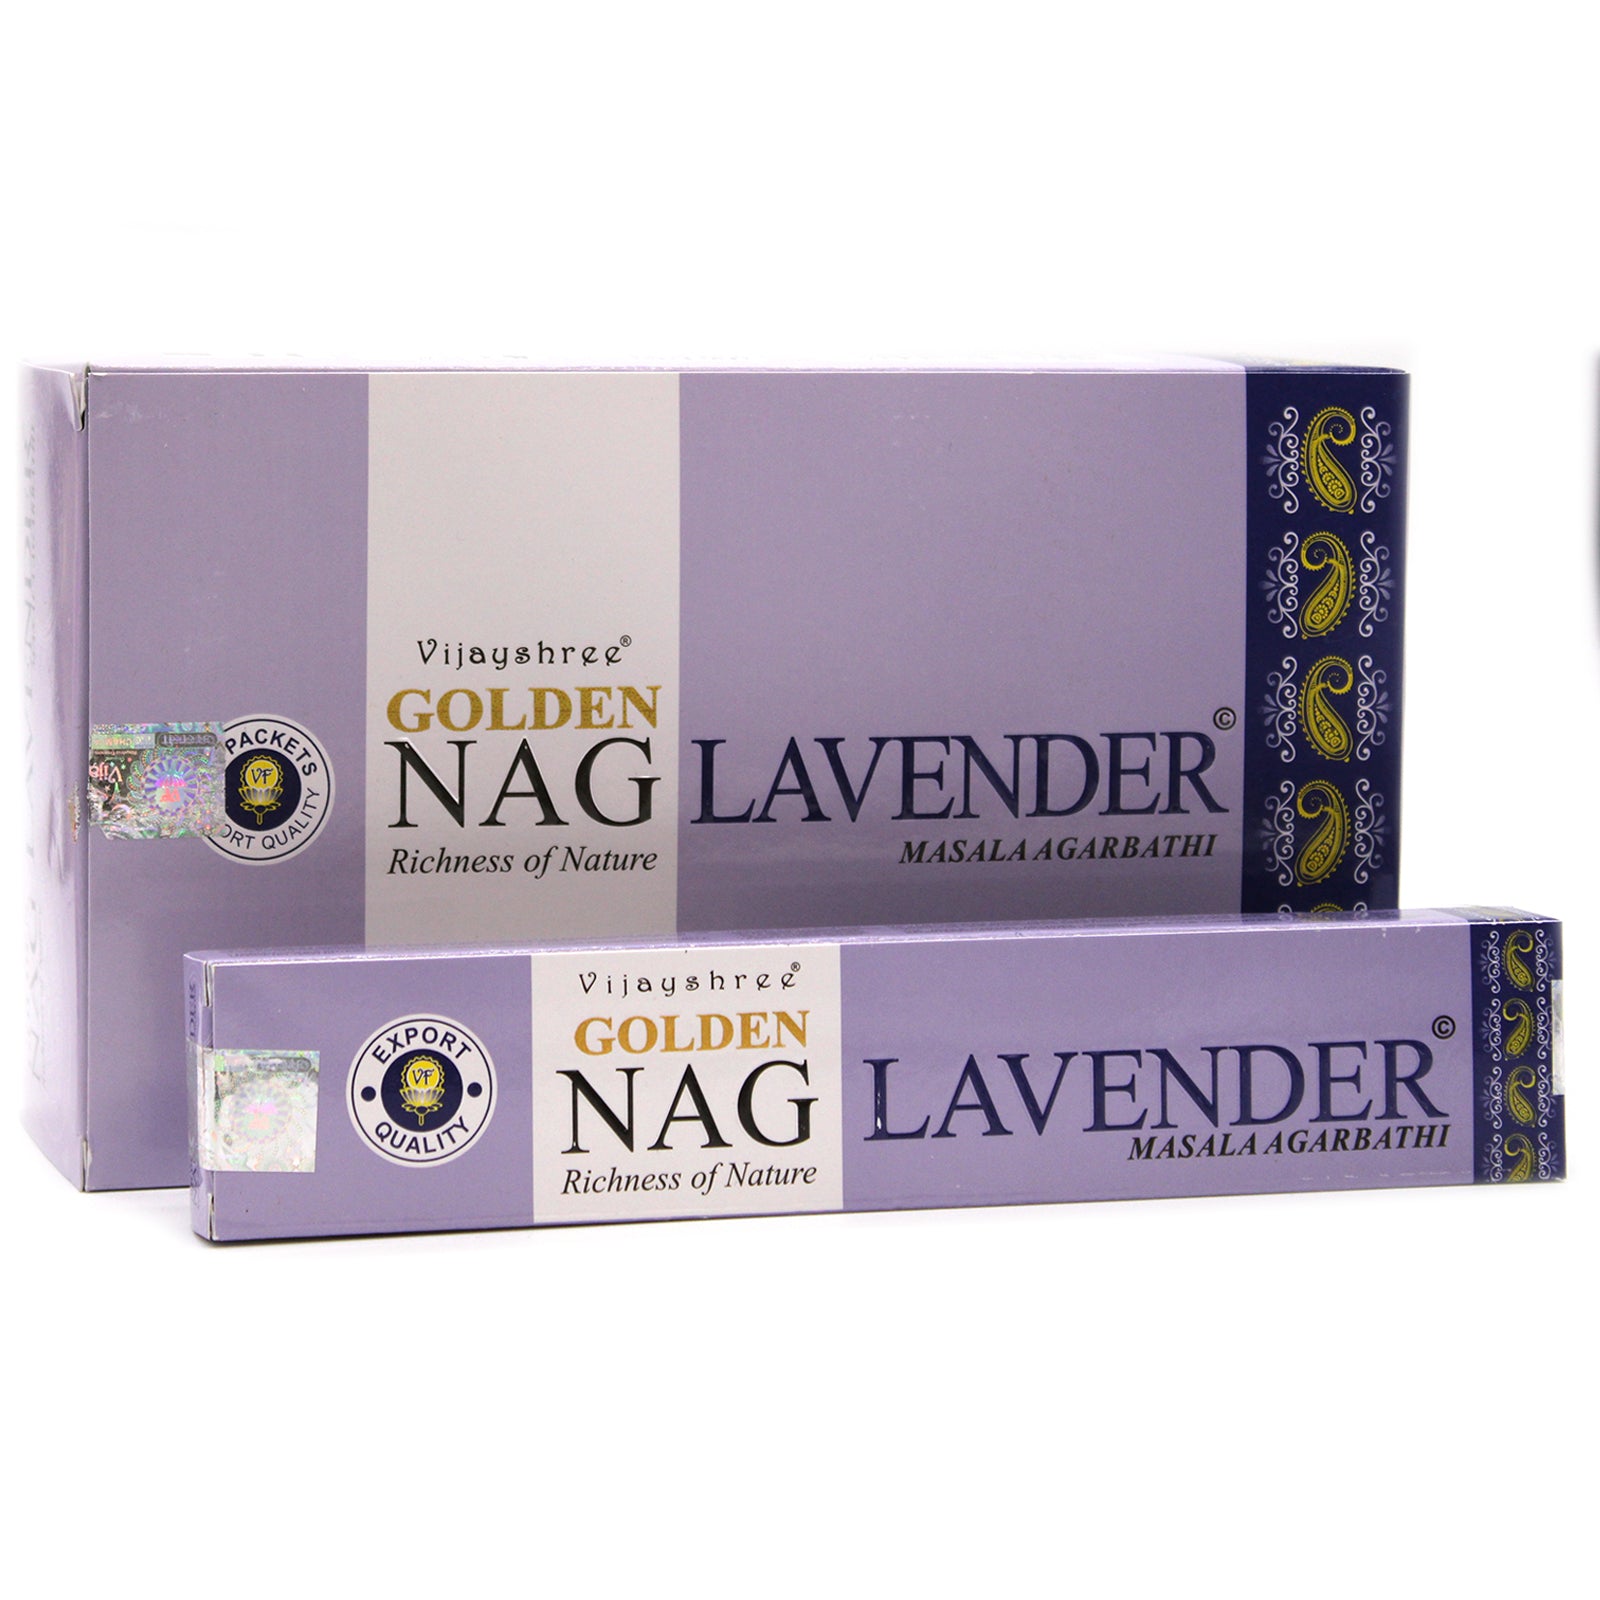 View 15g Golden Nag Lavender information